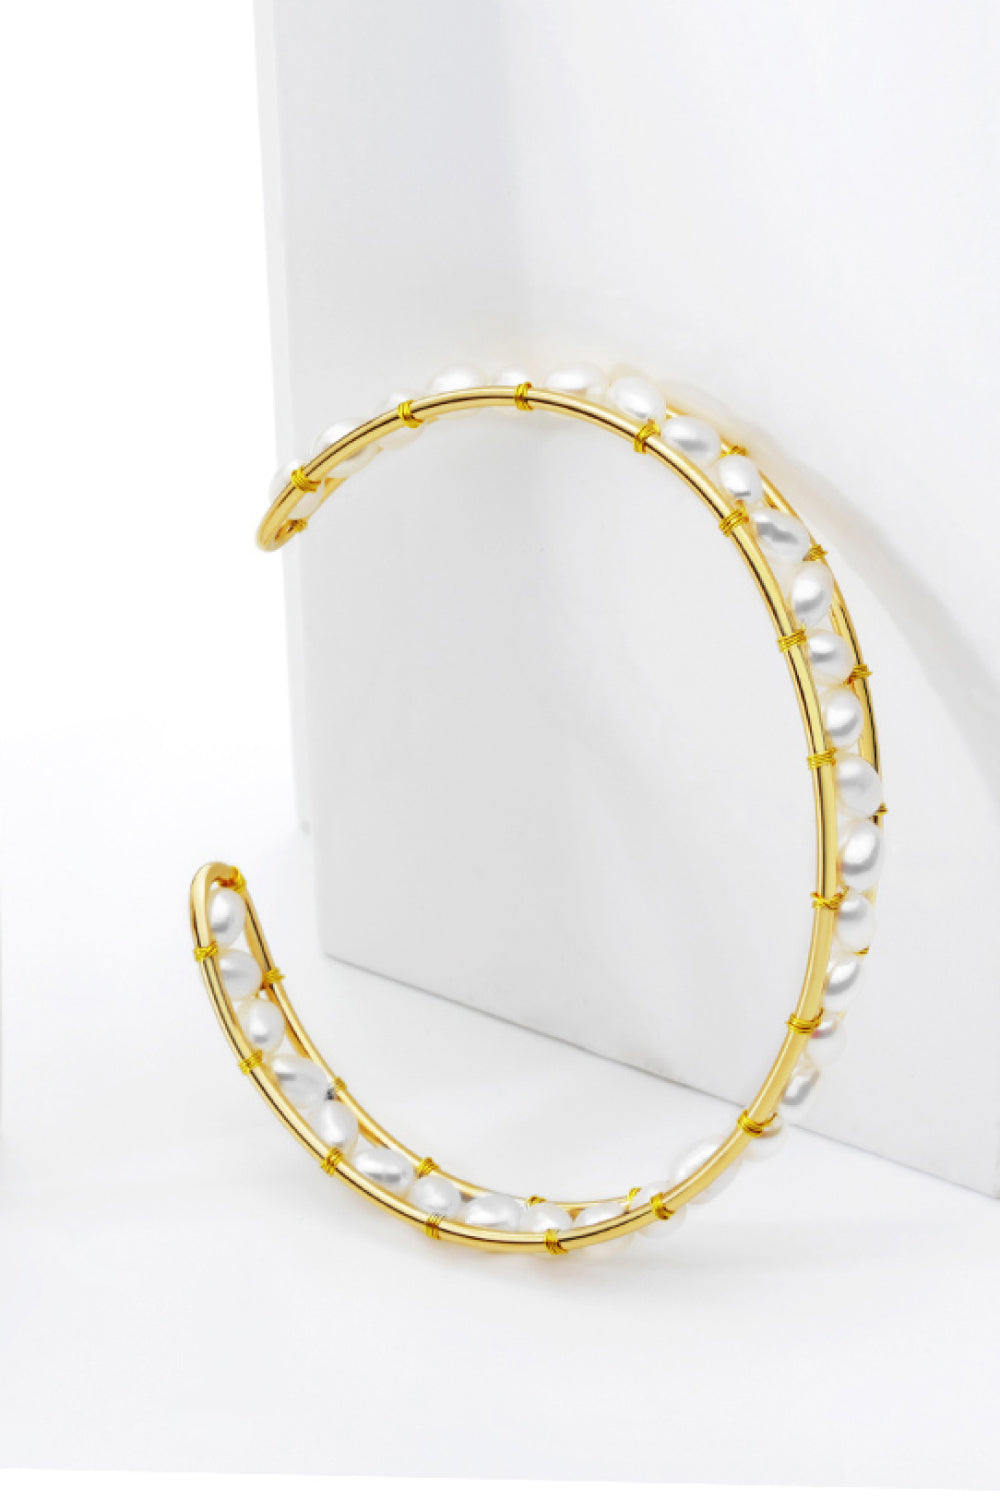 Freshwater Pearl Copper Open Bracelet - Gold / One Size - Women’s Jewelry - Bracelets - 3 - 2024